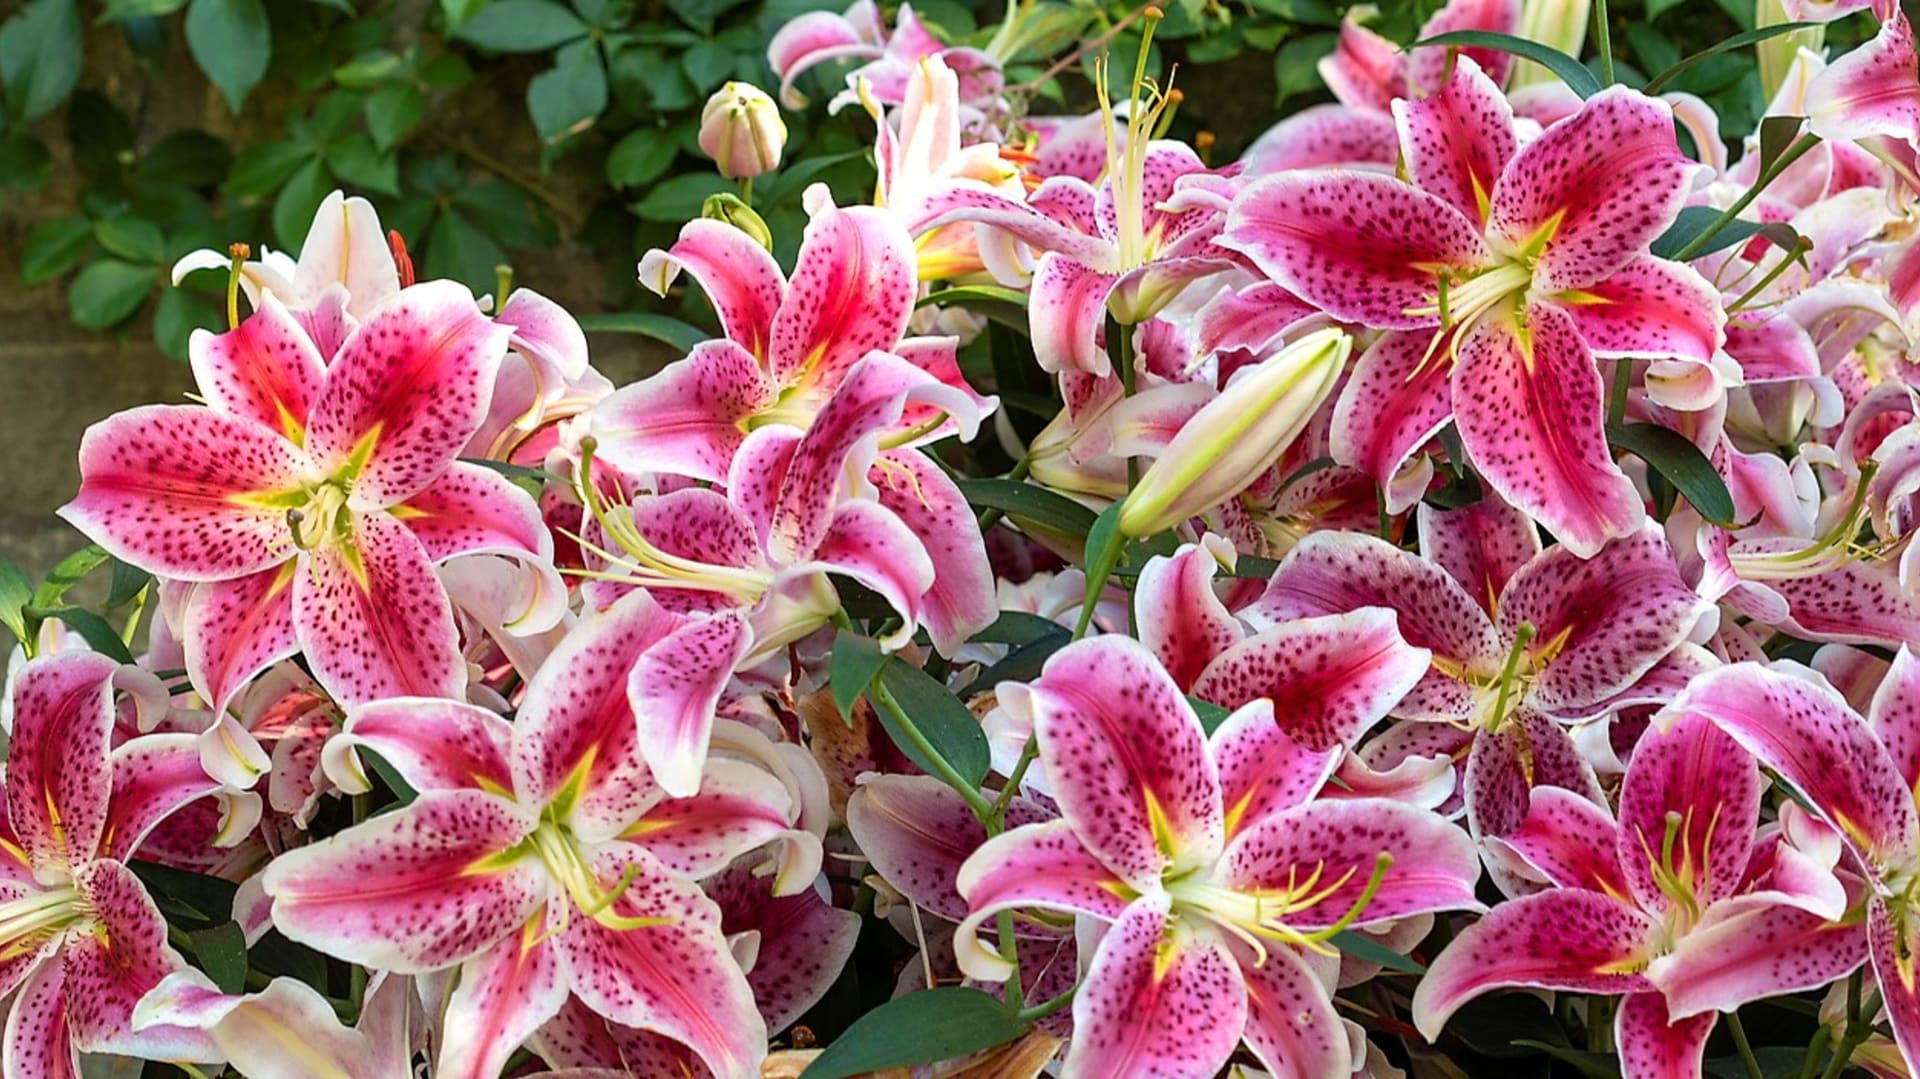 Orietální lilie: Nejznámější a zároveň nejvoňavější je kultivar Stargazer s velkými růžovočervenými květy s bílým lemováním a tmavými skvrnkami.